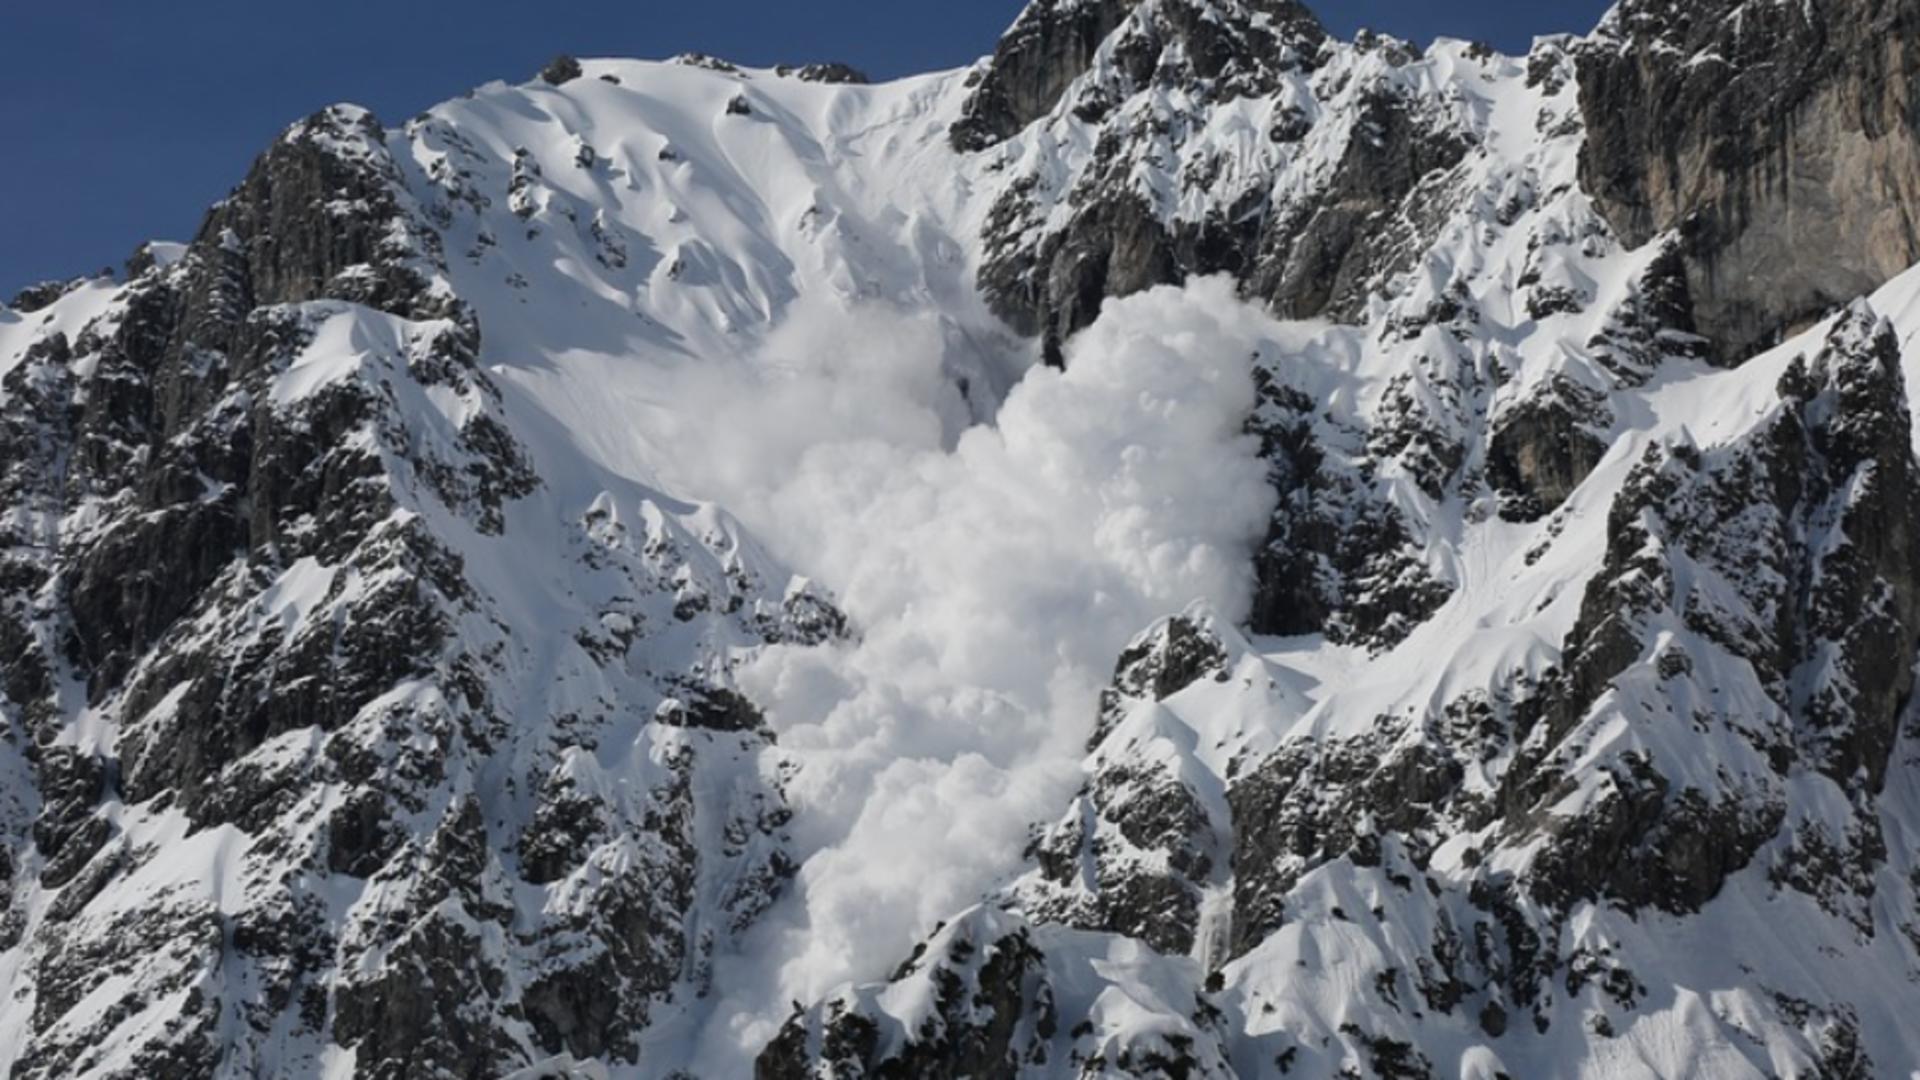 Risc de avalanșe la munte în urma ninsorilor Foto: Pixabay.com